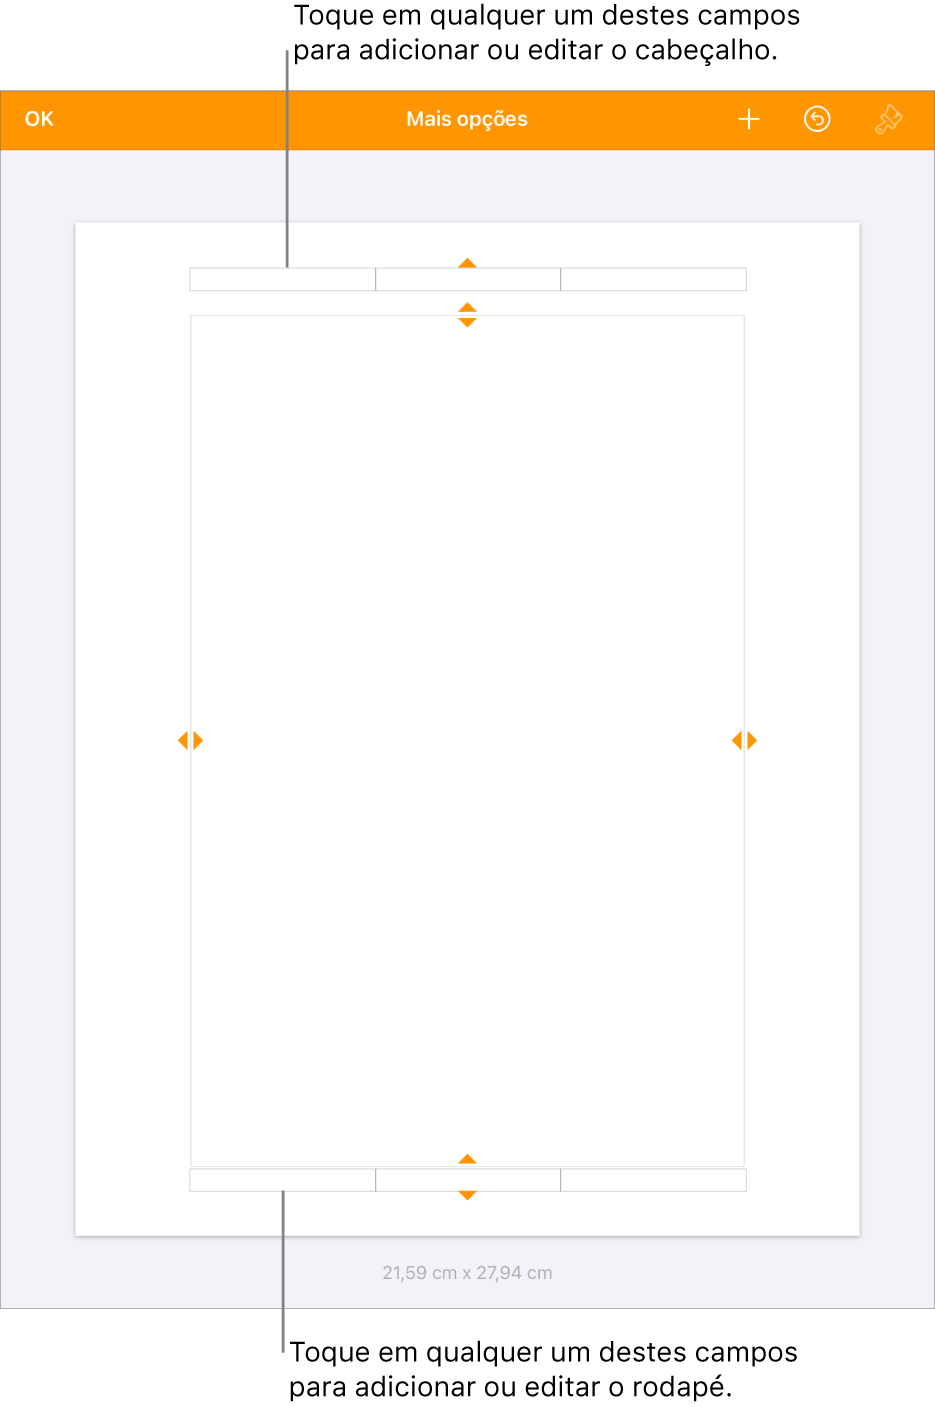 A vista “Mais opções” com três campos na parte superior do documento para cabeçalhos e três campos na parte inferior para rodapés.